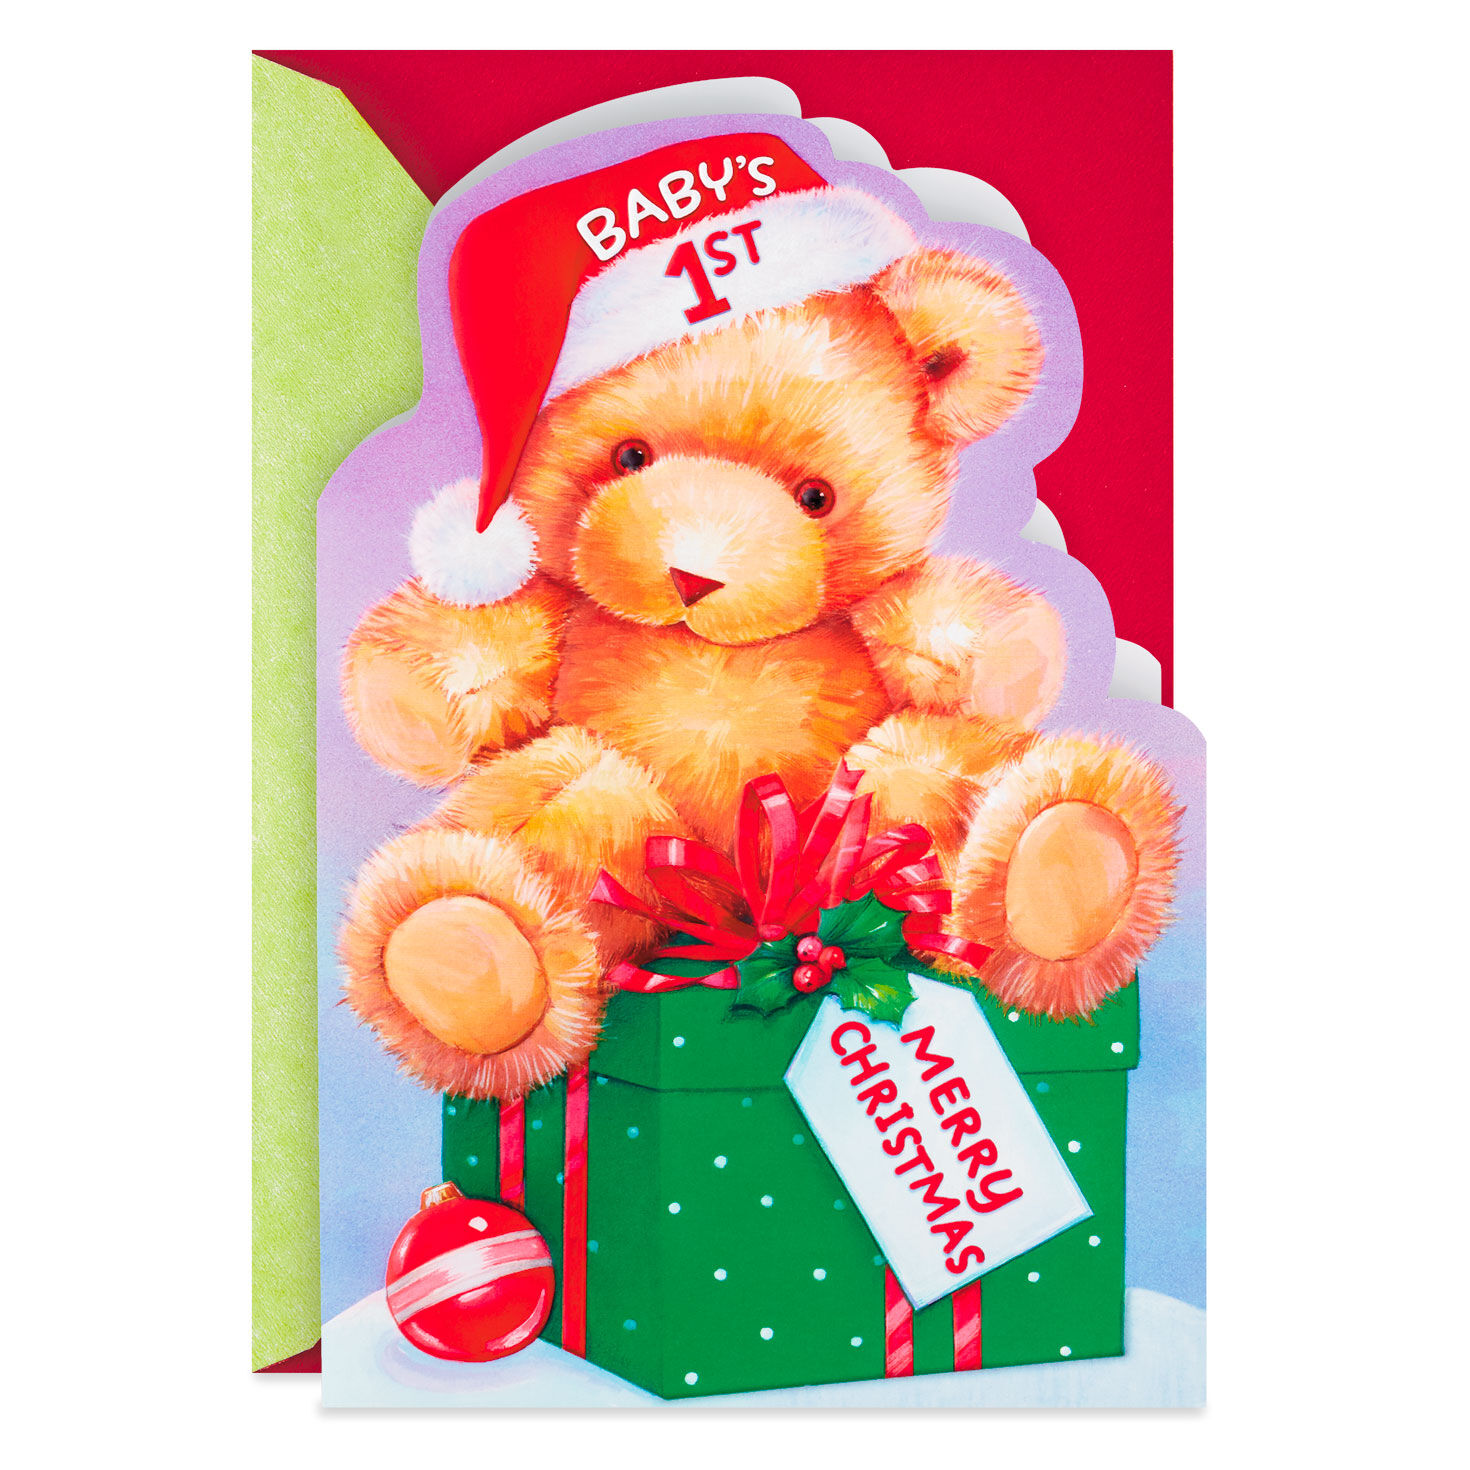 NEW Cute Soft Cuddly Gift Present Teddy Bear HAPPY BIRTHDAY AMANDA 